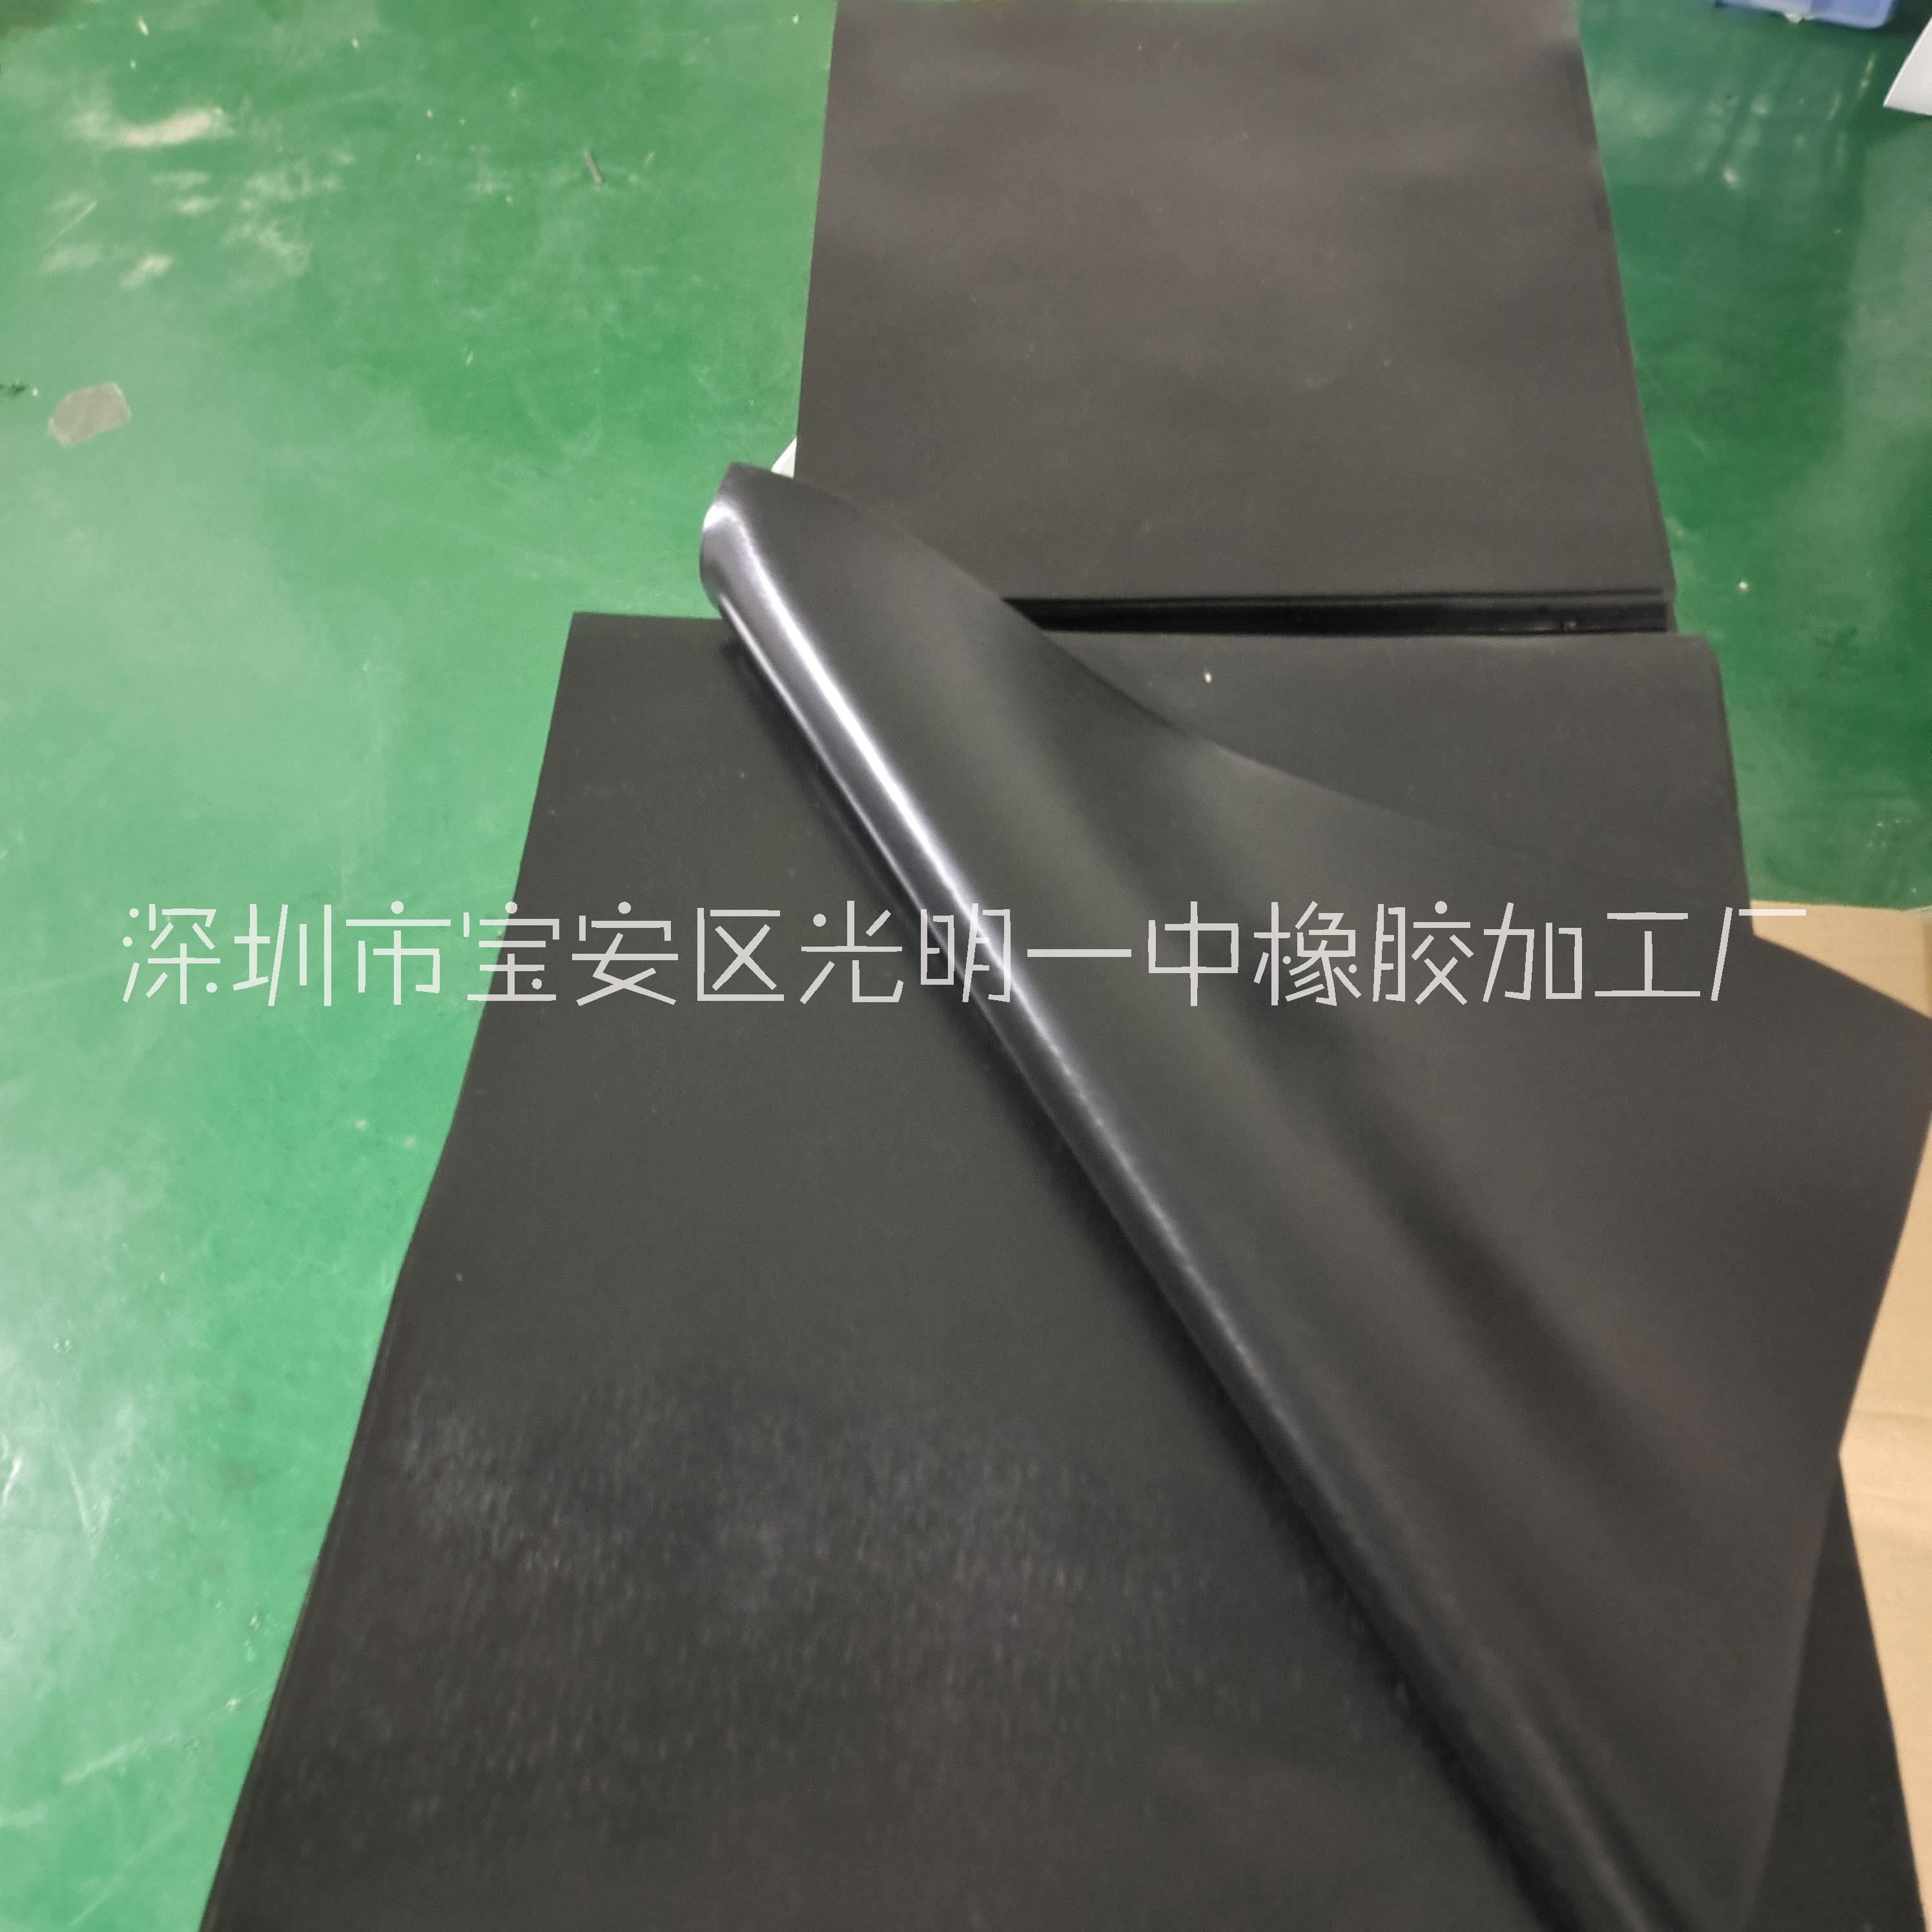 深圳市网格硅胶板厂家供应黑色80度网格硅胶板  格纹硅胶片橡胶片  70度网格硅胶板橡胶板